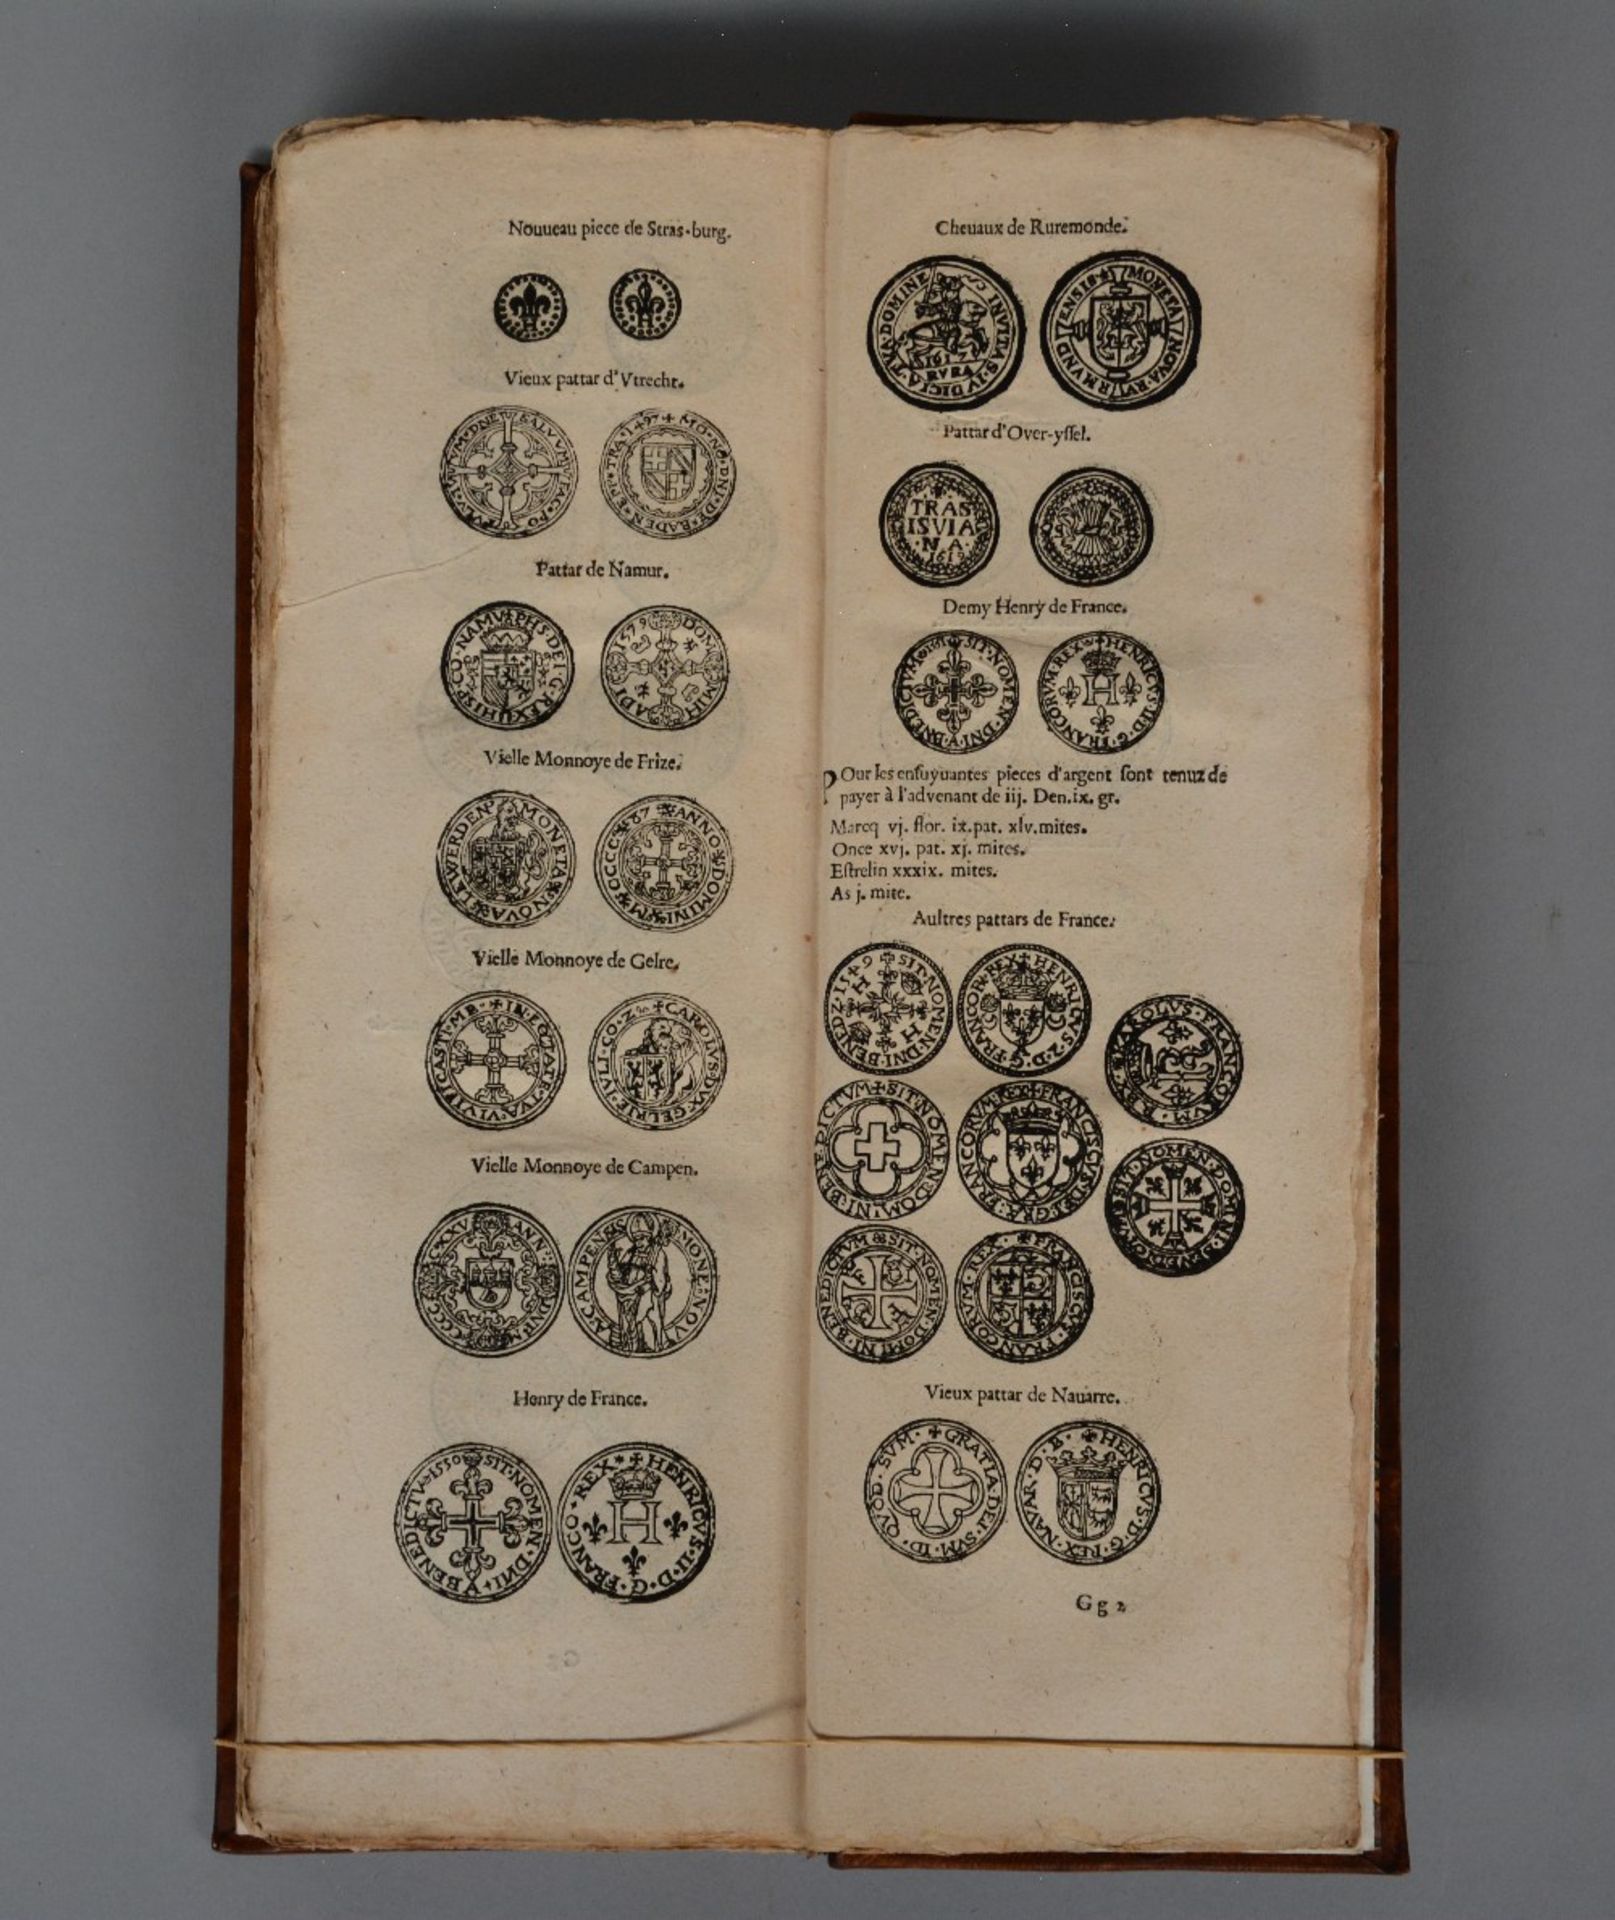 A 17thC stockbrokers handbook, ed. by 'H. Verdussen - Antwerp 1633', richly illustrated, 20thC - Bild 7 aus 8